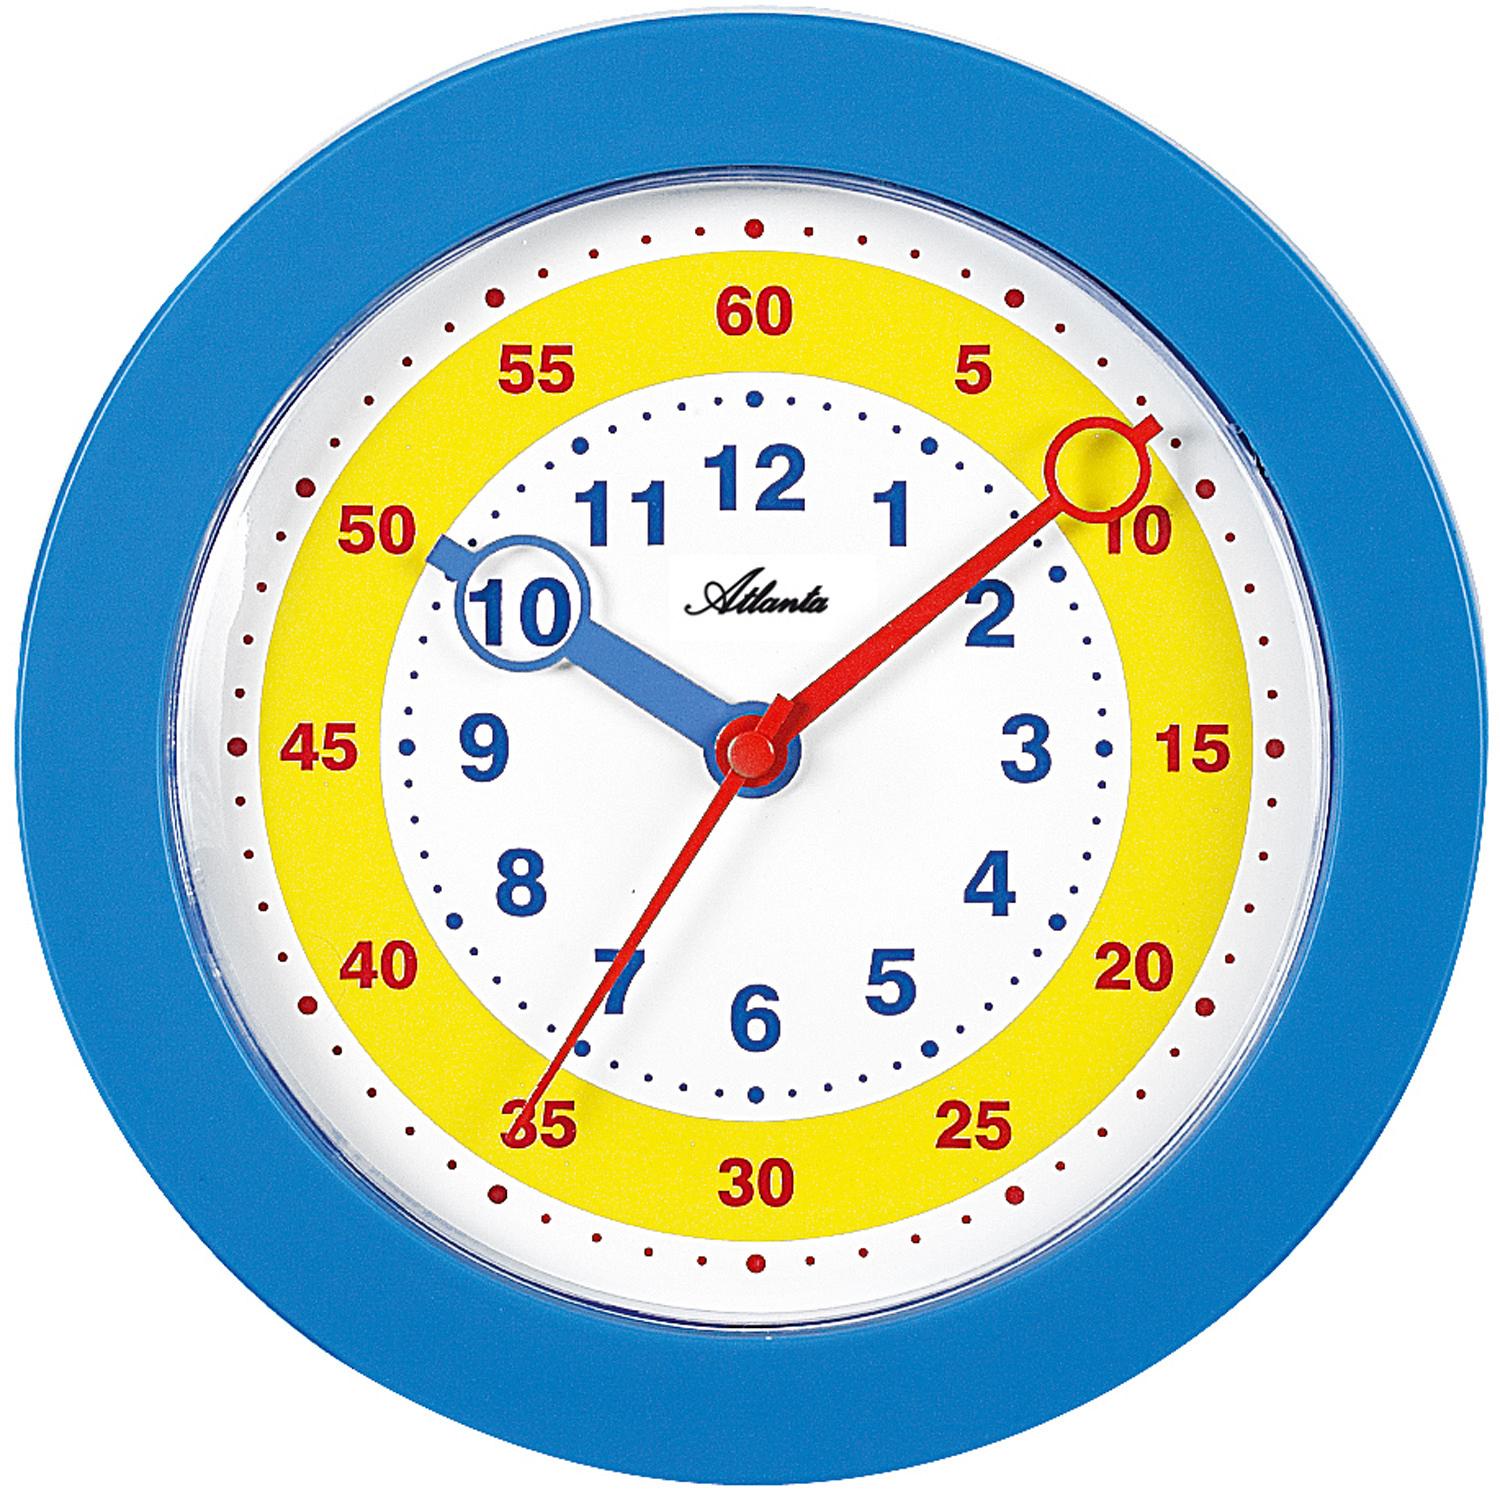 Циферблат детских часов. Часы циферблат для детей. Часы обучающие для детей. Часы с минутами для детей. Модель часов для детей.